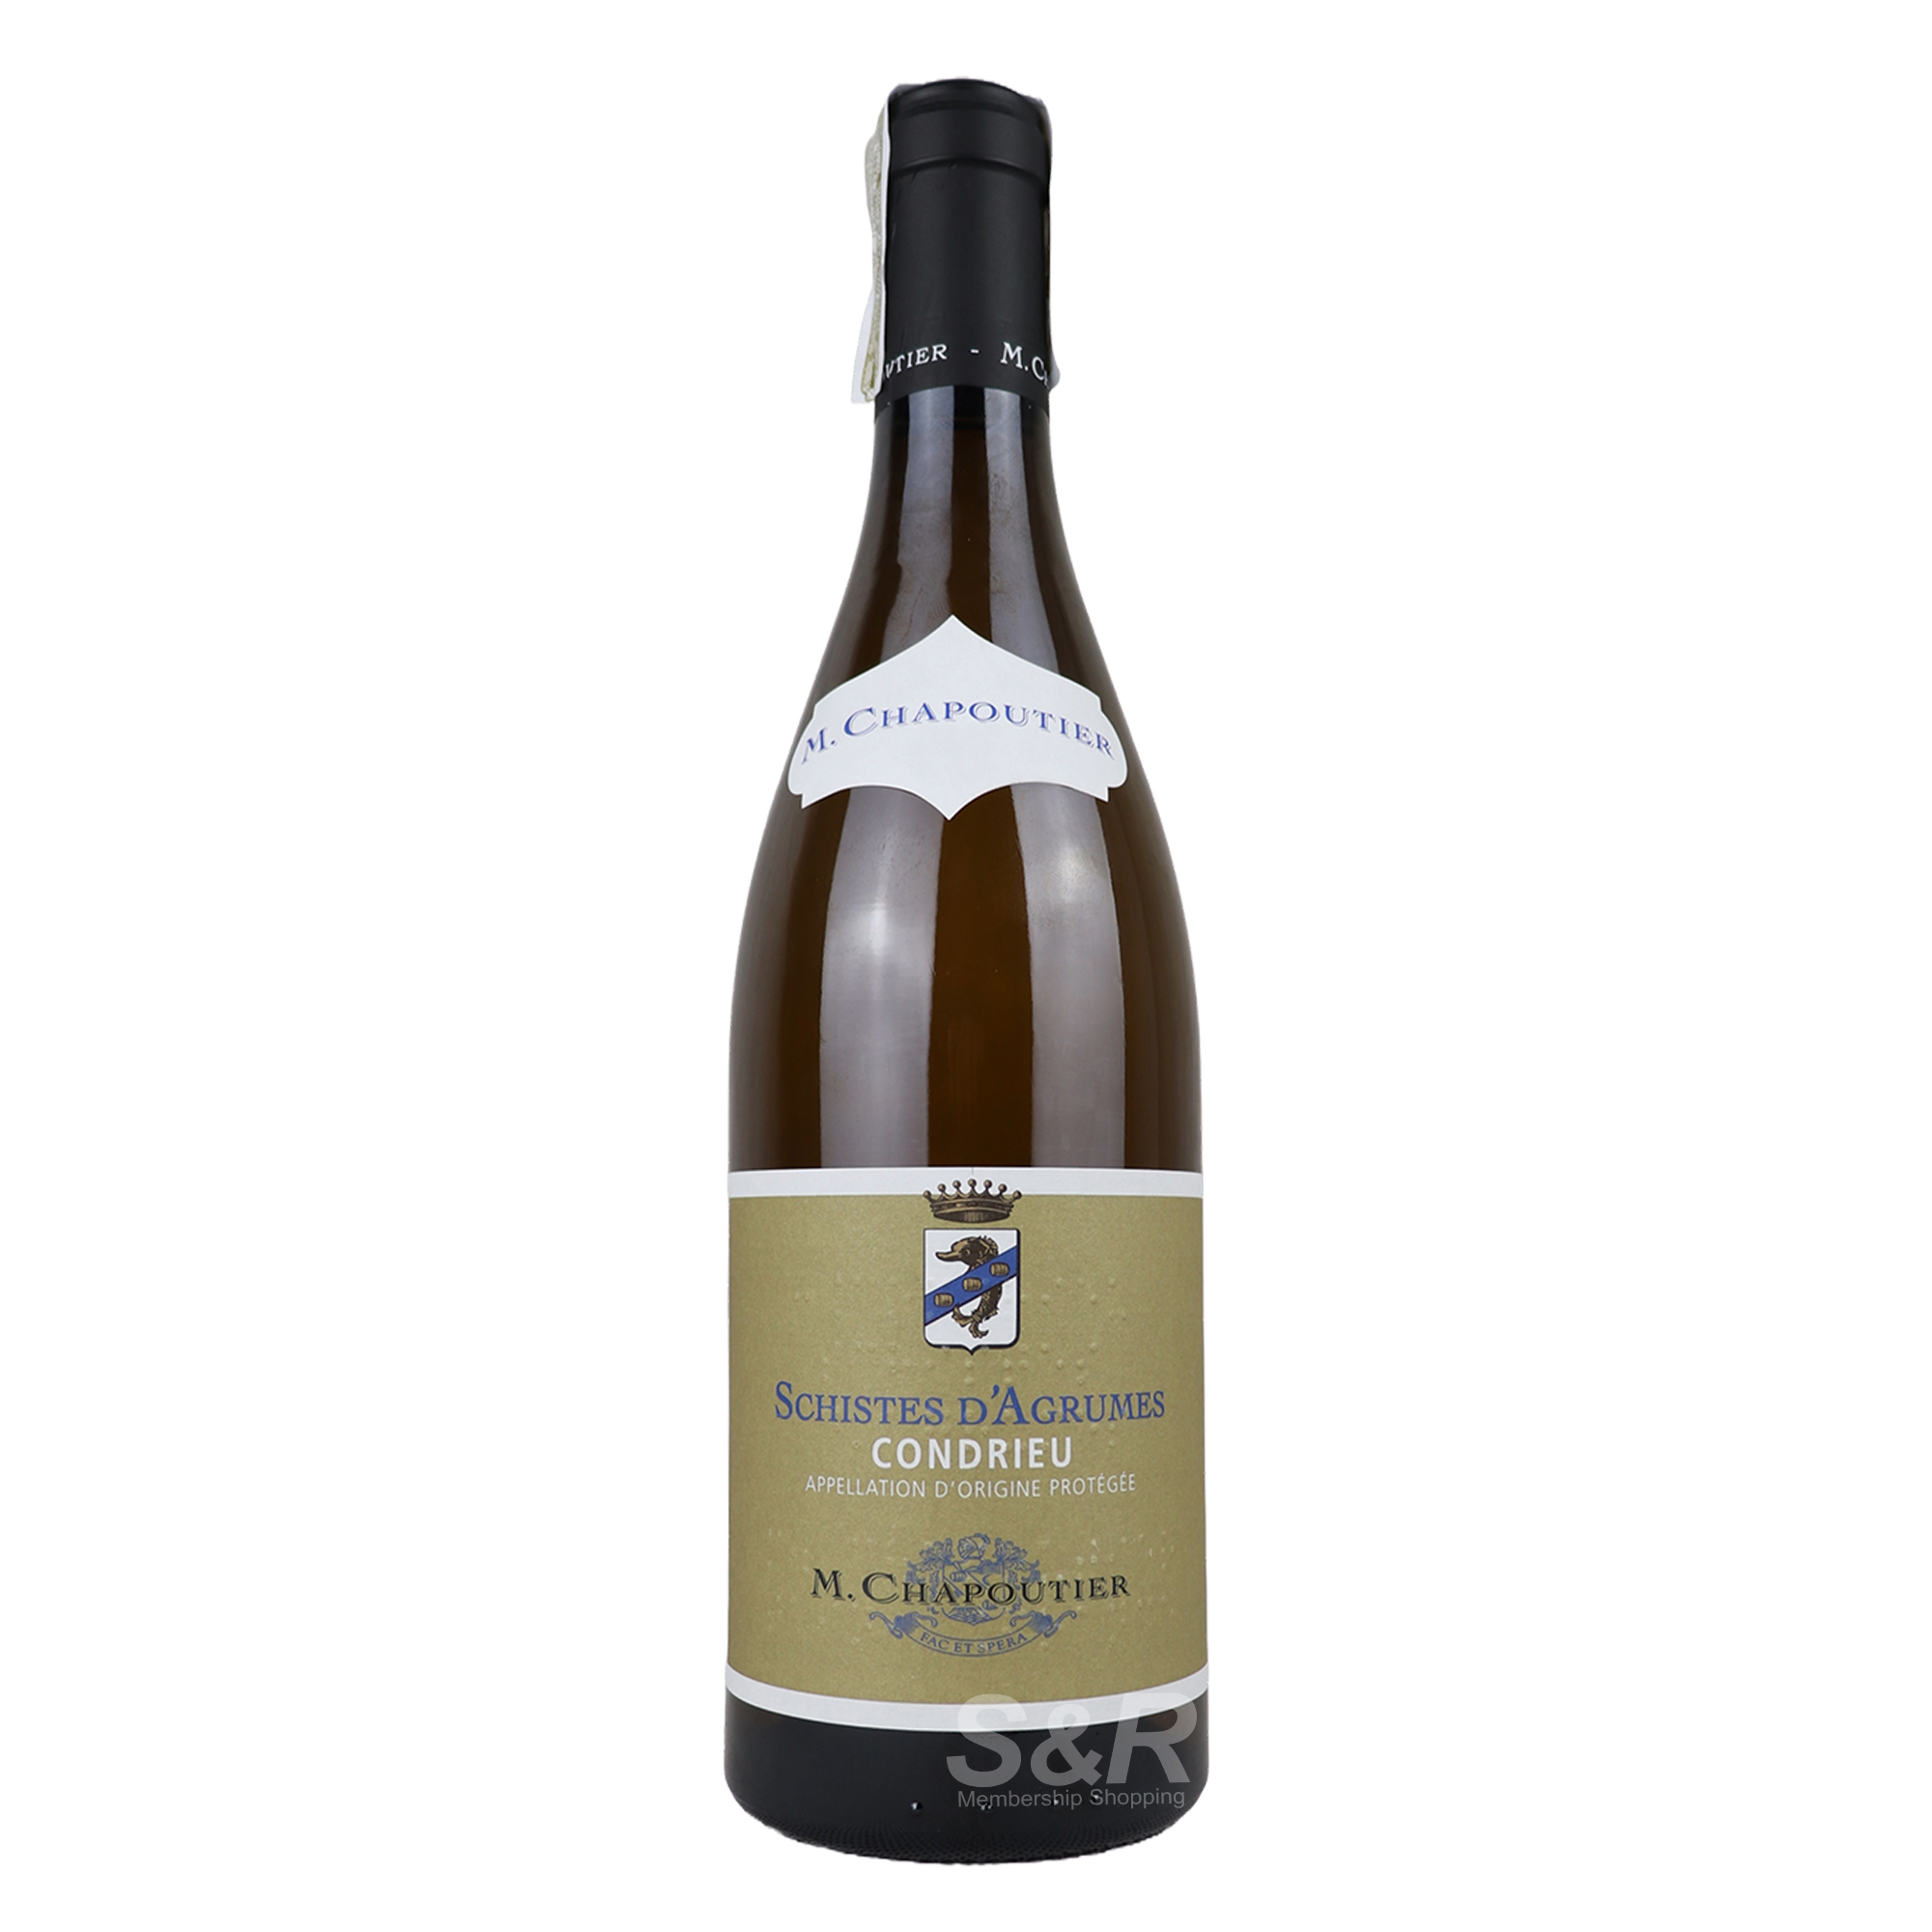 M. Chapoutier Schistes D'Agrumes Condrieu White Wine 750mL